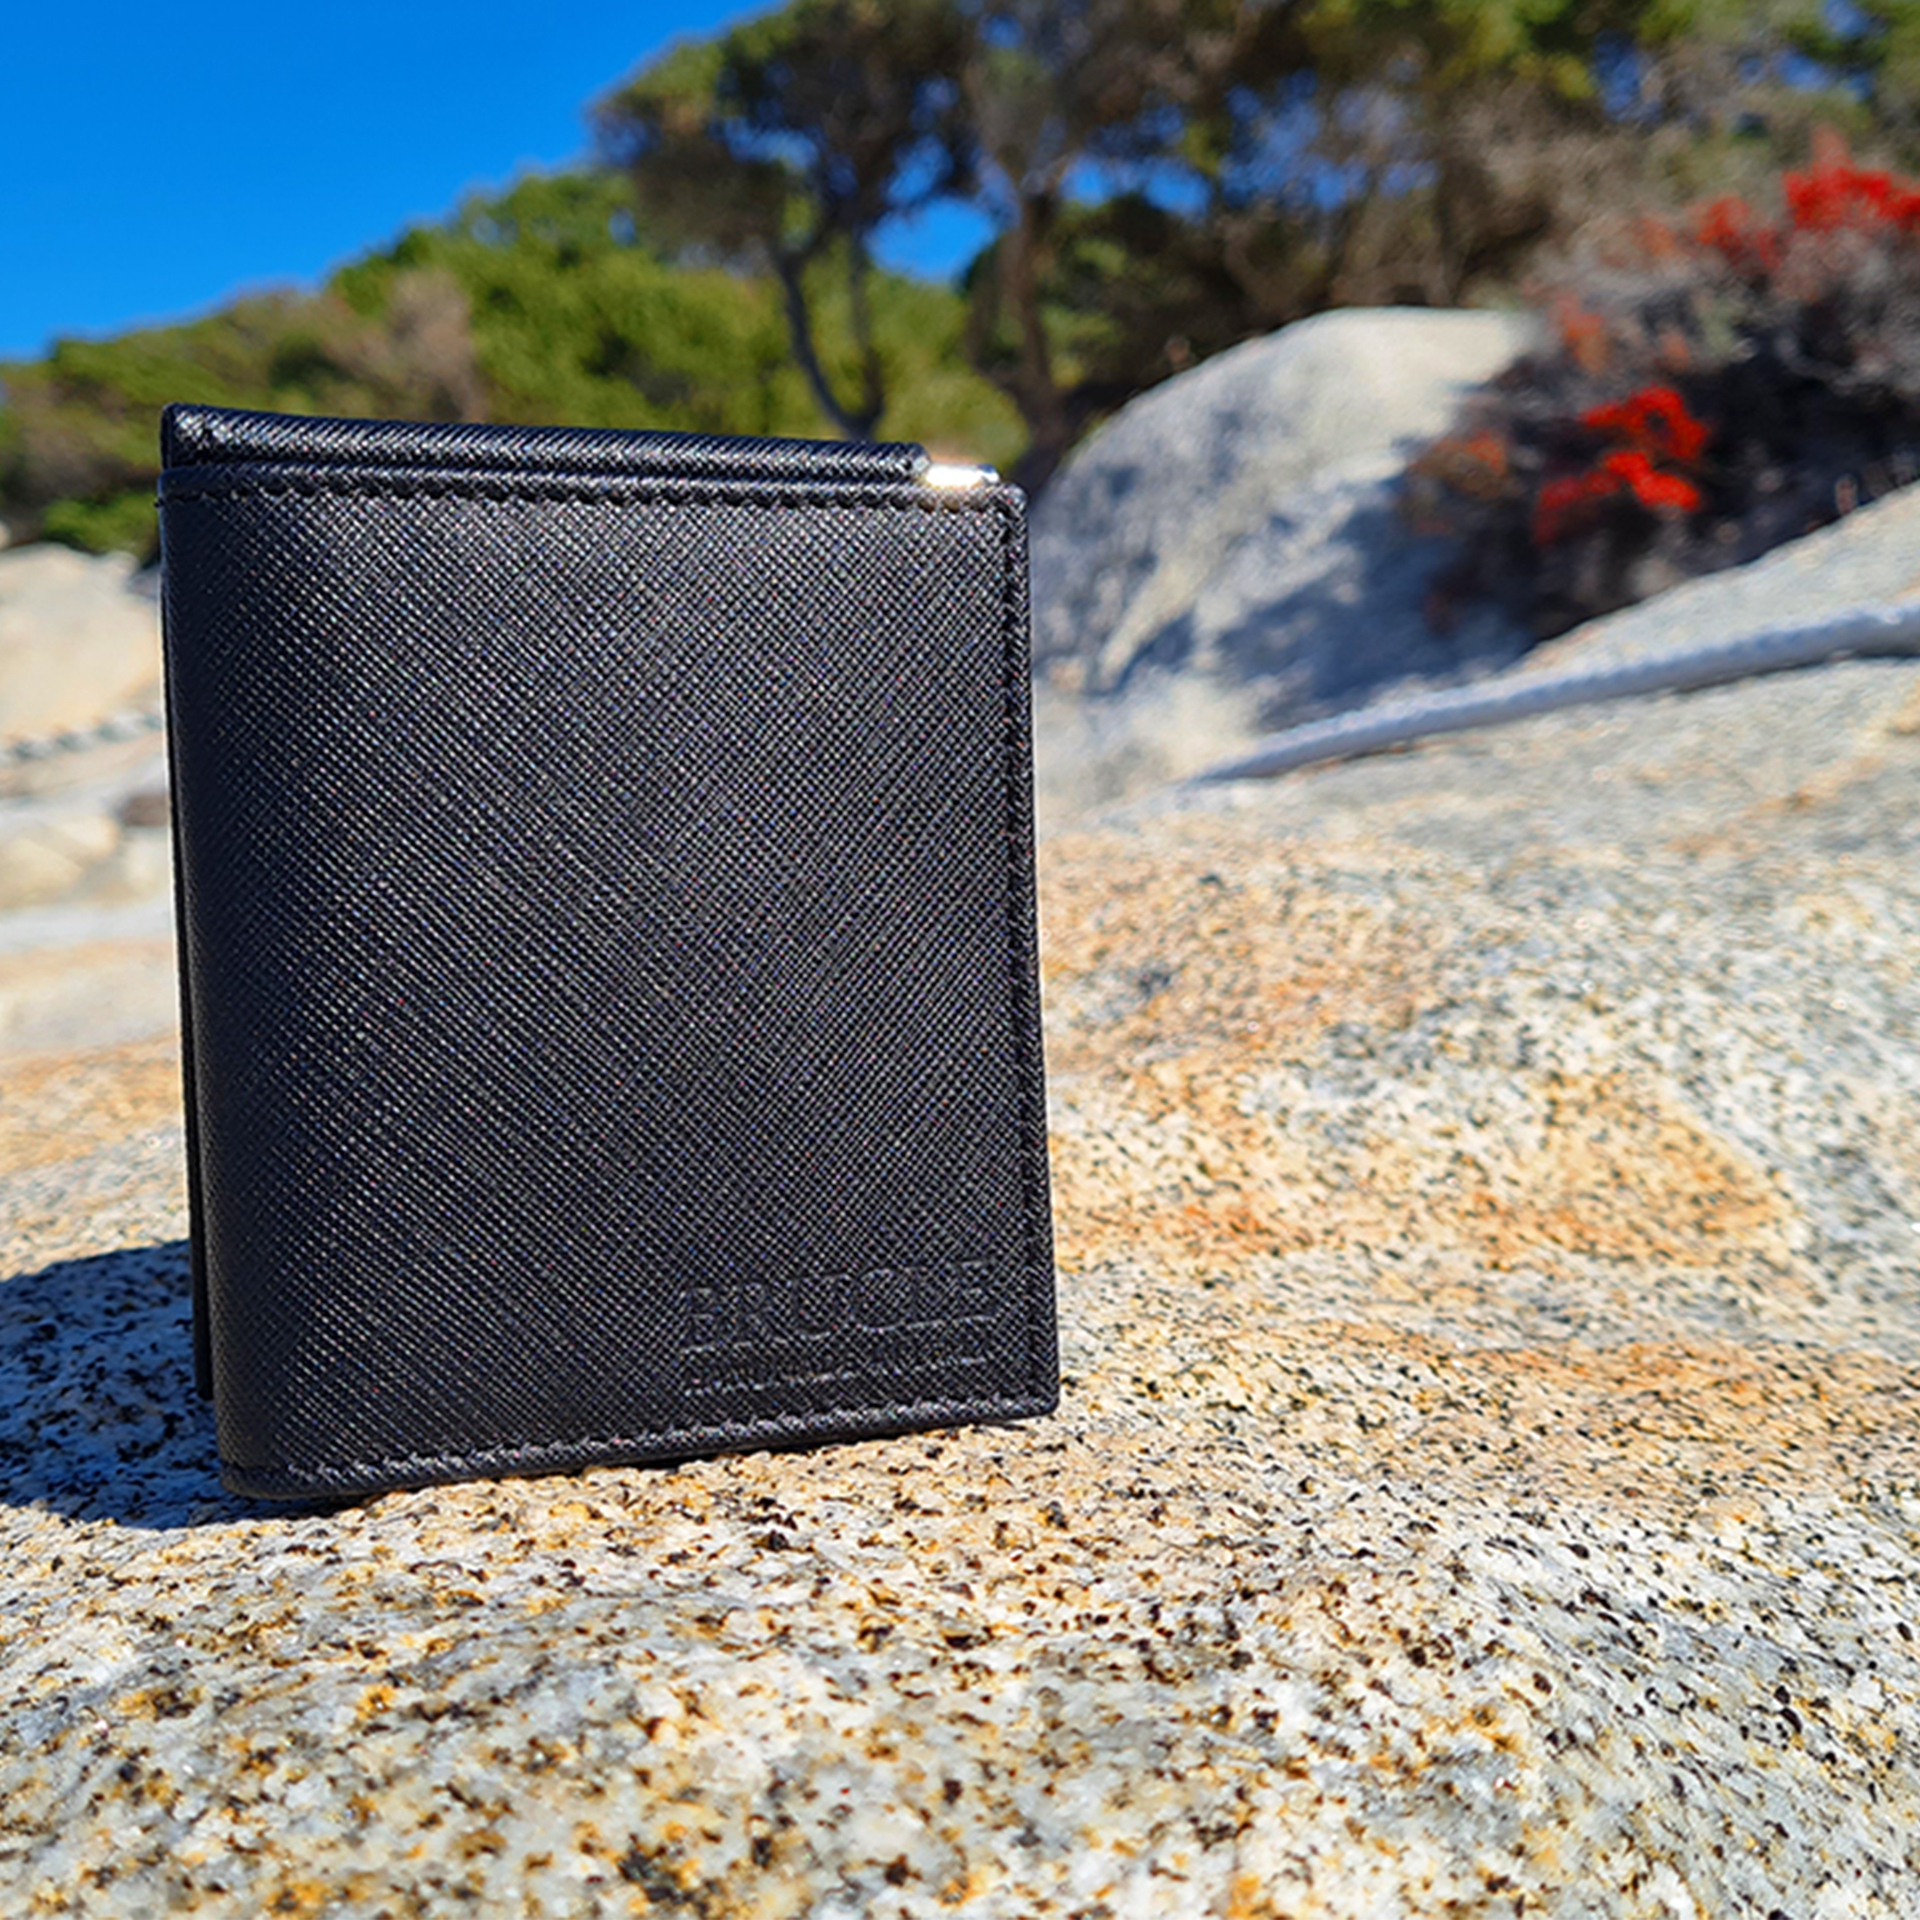 Mini portafoglio compatto in pelle saffiano con fermasoldi e portamonete, nero